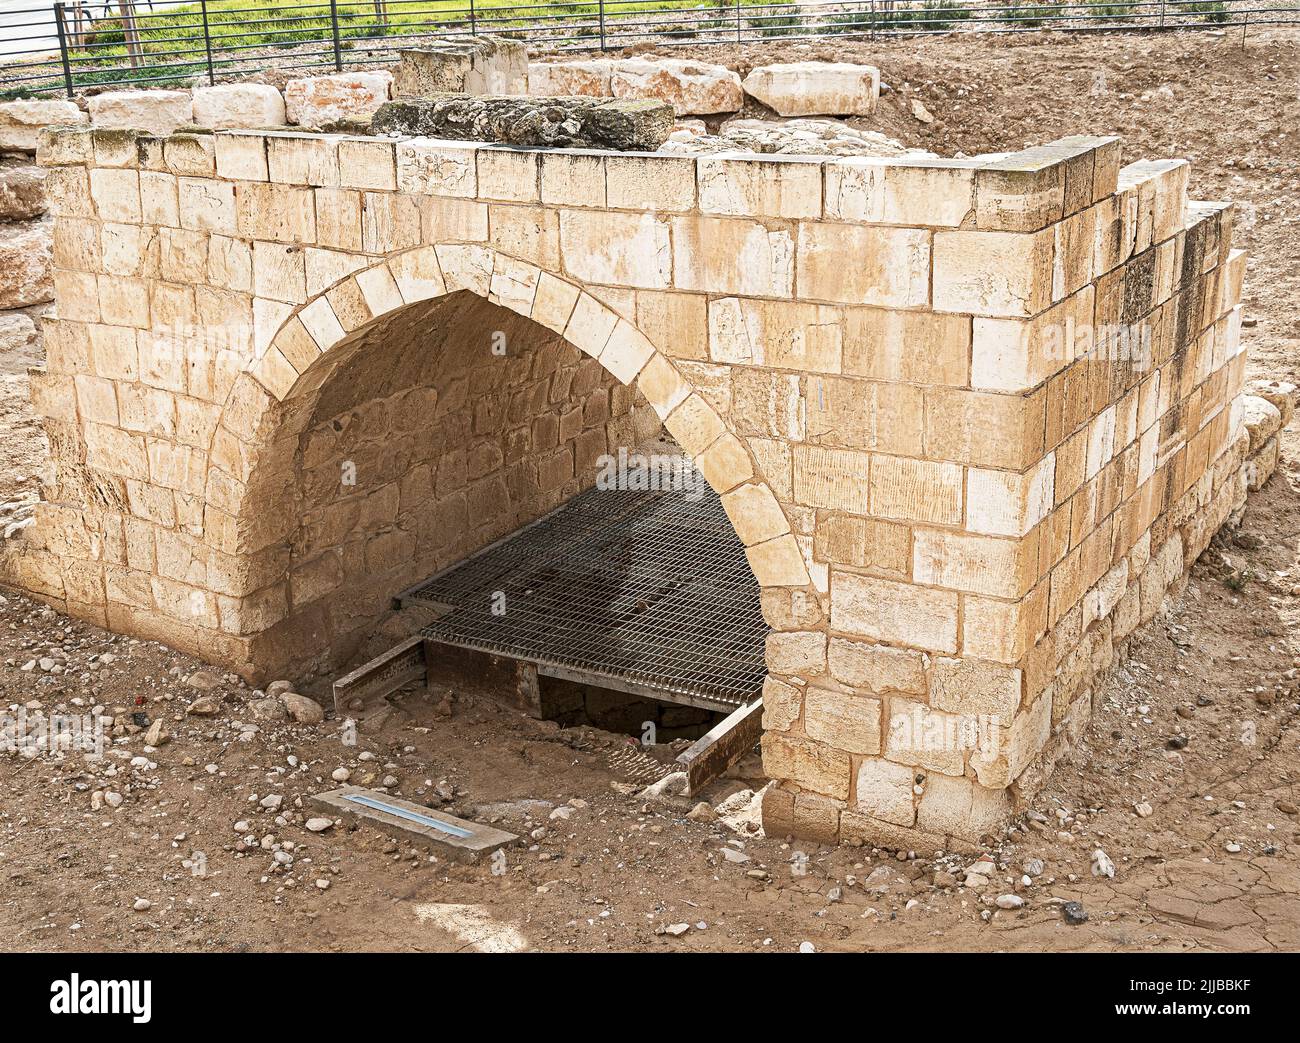 Rovine di un pozzo mitico di epoca biblica a Beer Sheva in Israele con la struttura di supporto della ruota d'acqua di pietra calcarea dell'epoca ottomana Foto Stock